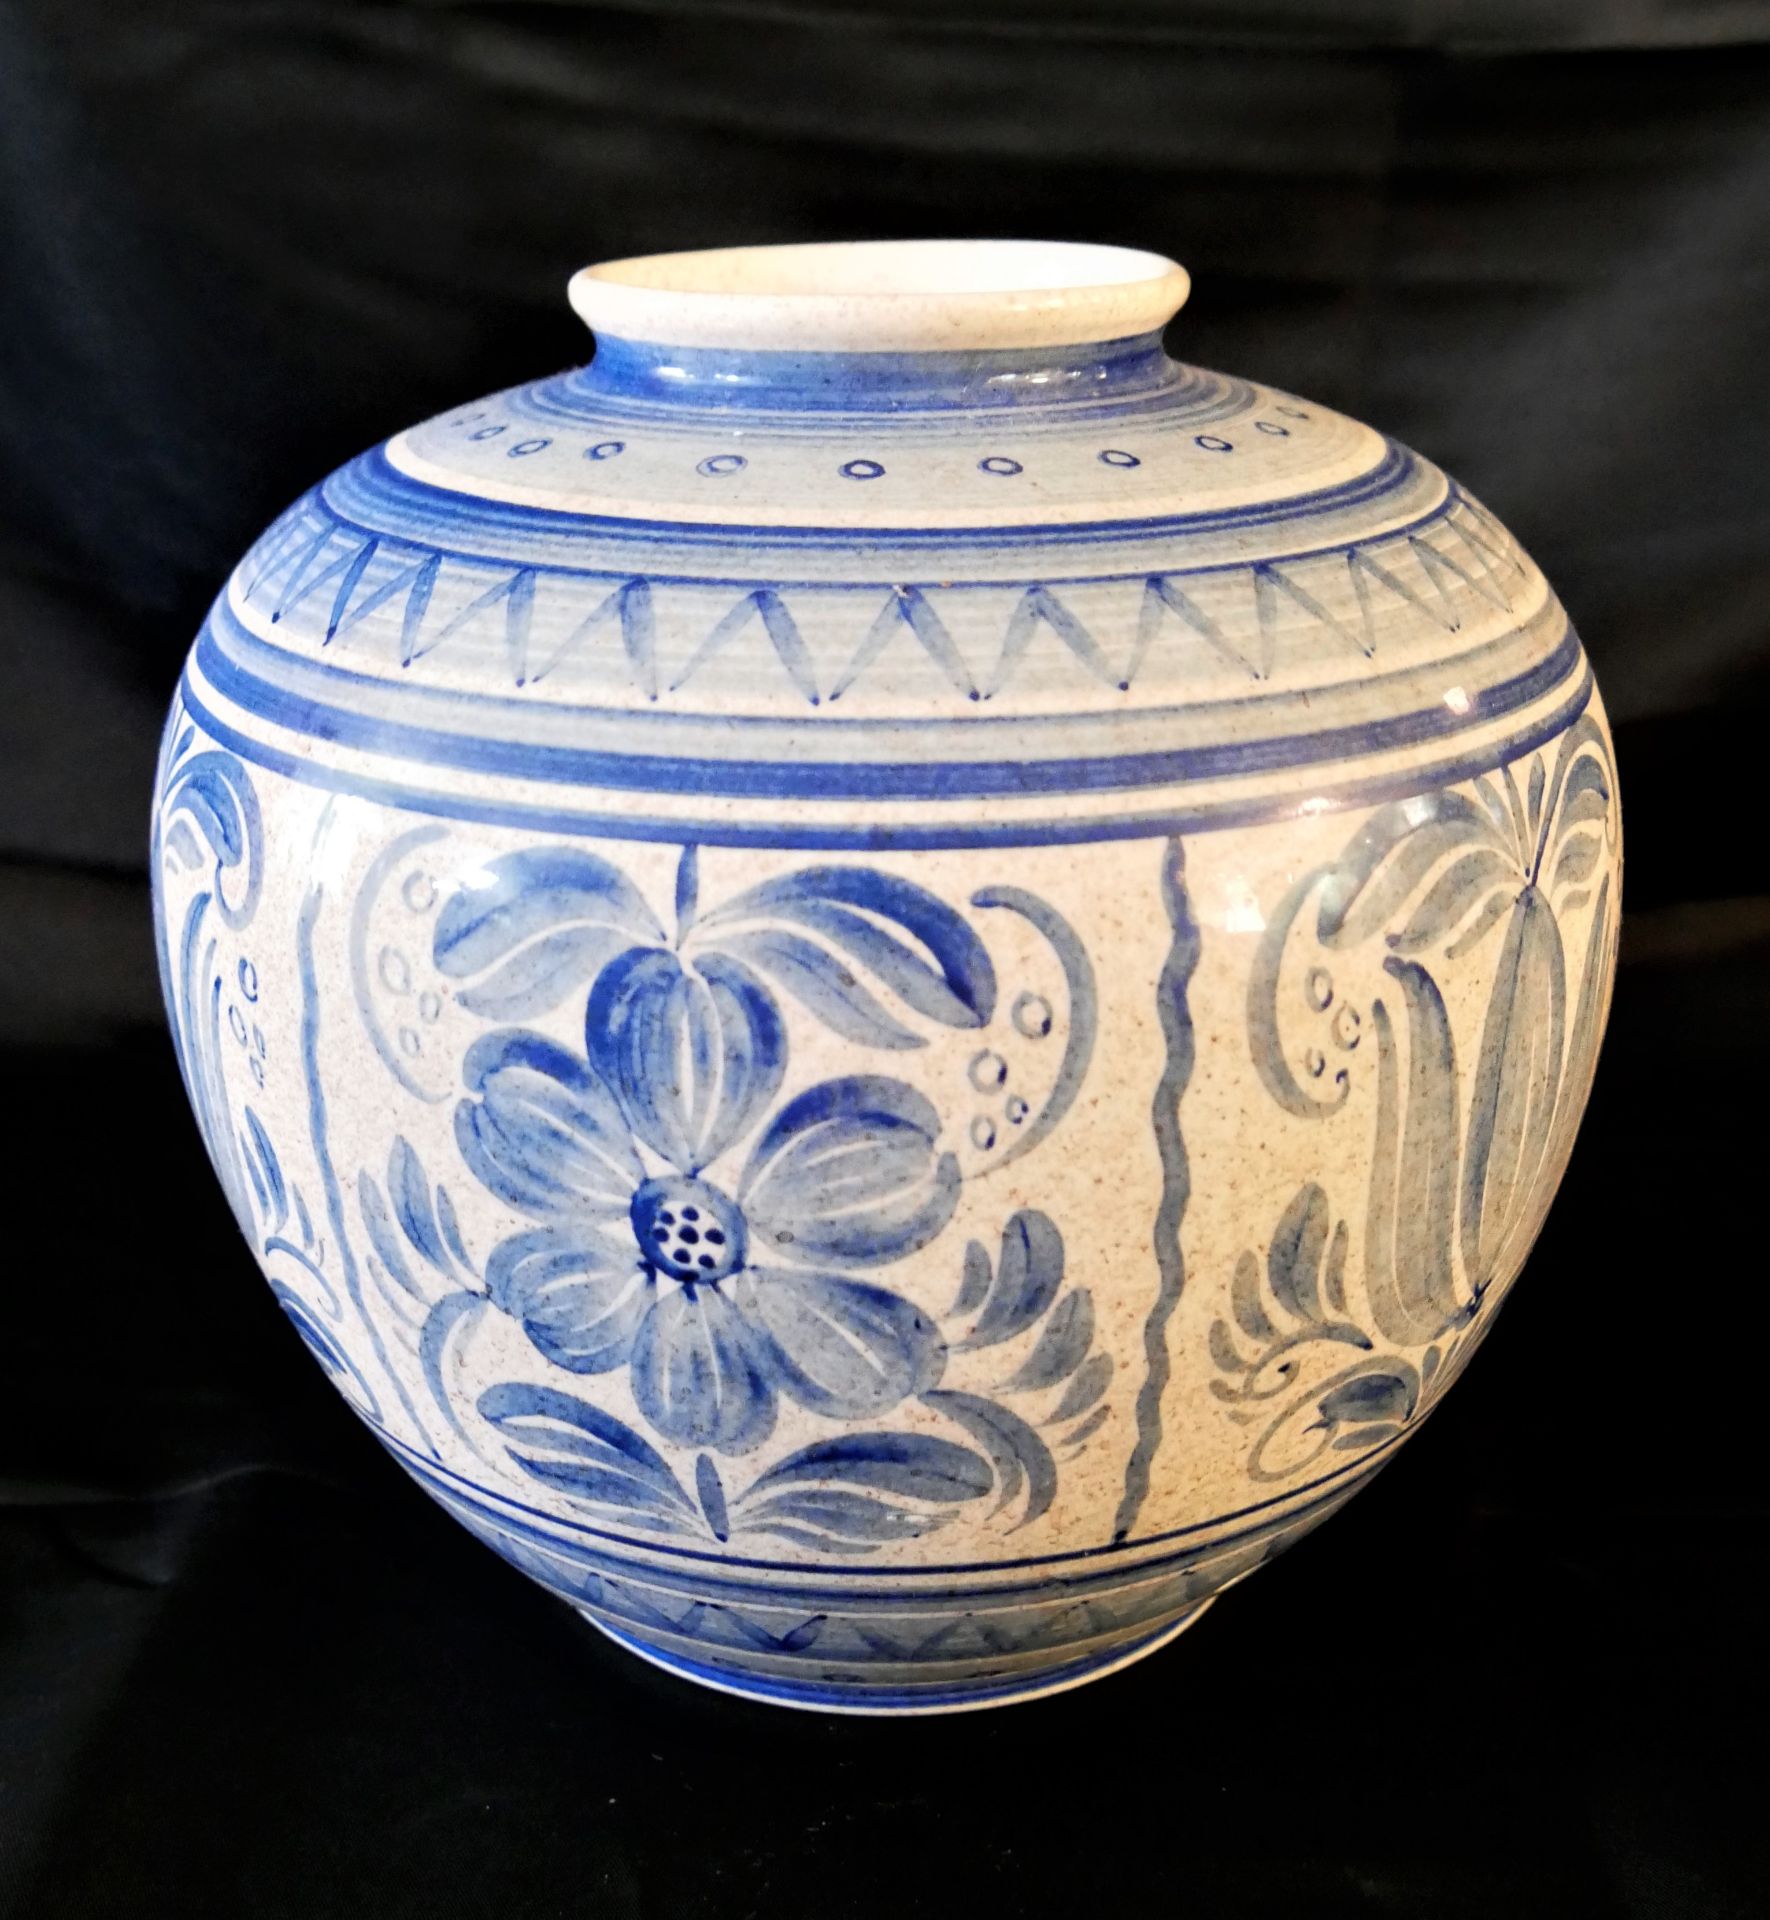 Keramik Vase Villeroy & Boch, gemarkt V+B M, Nr. 4133. Höhe ca. 21 cm. Unten wurde ein kleines